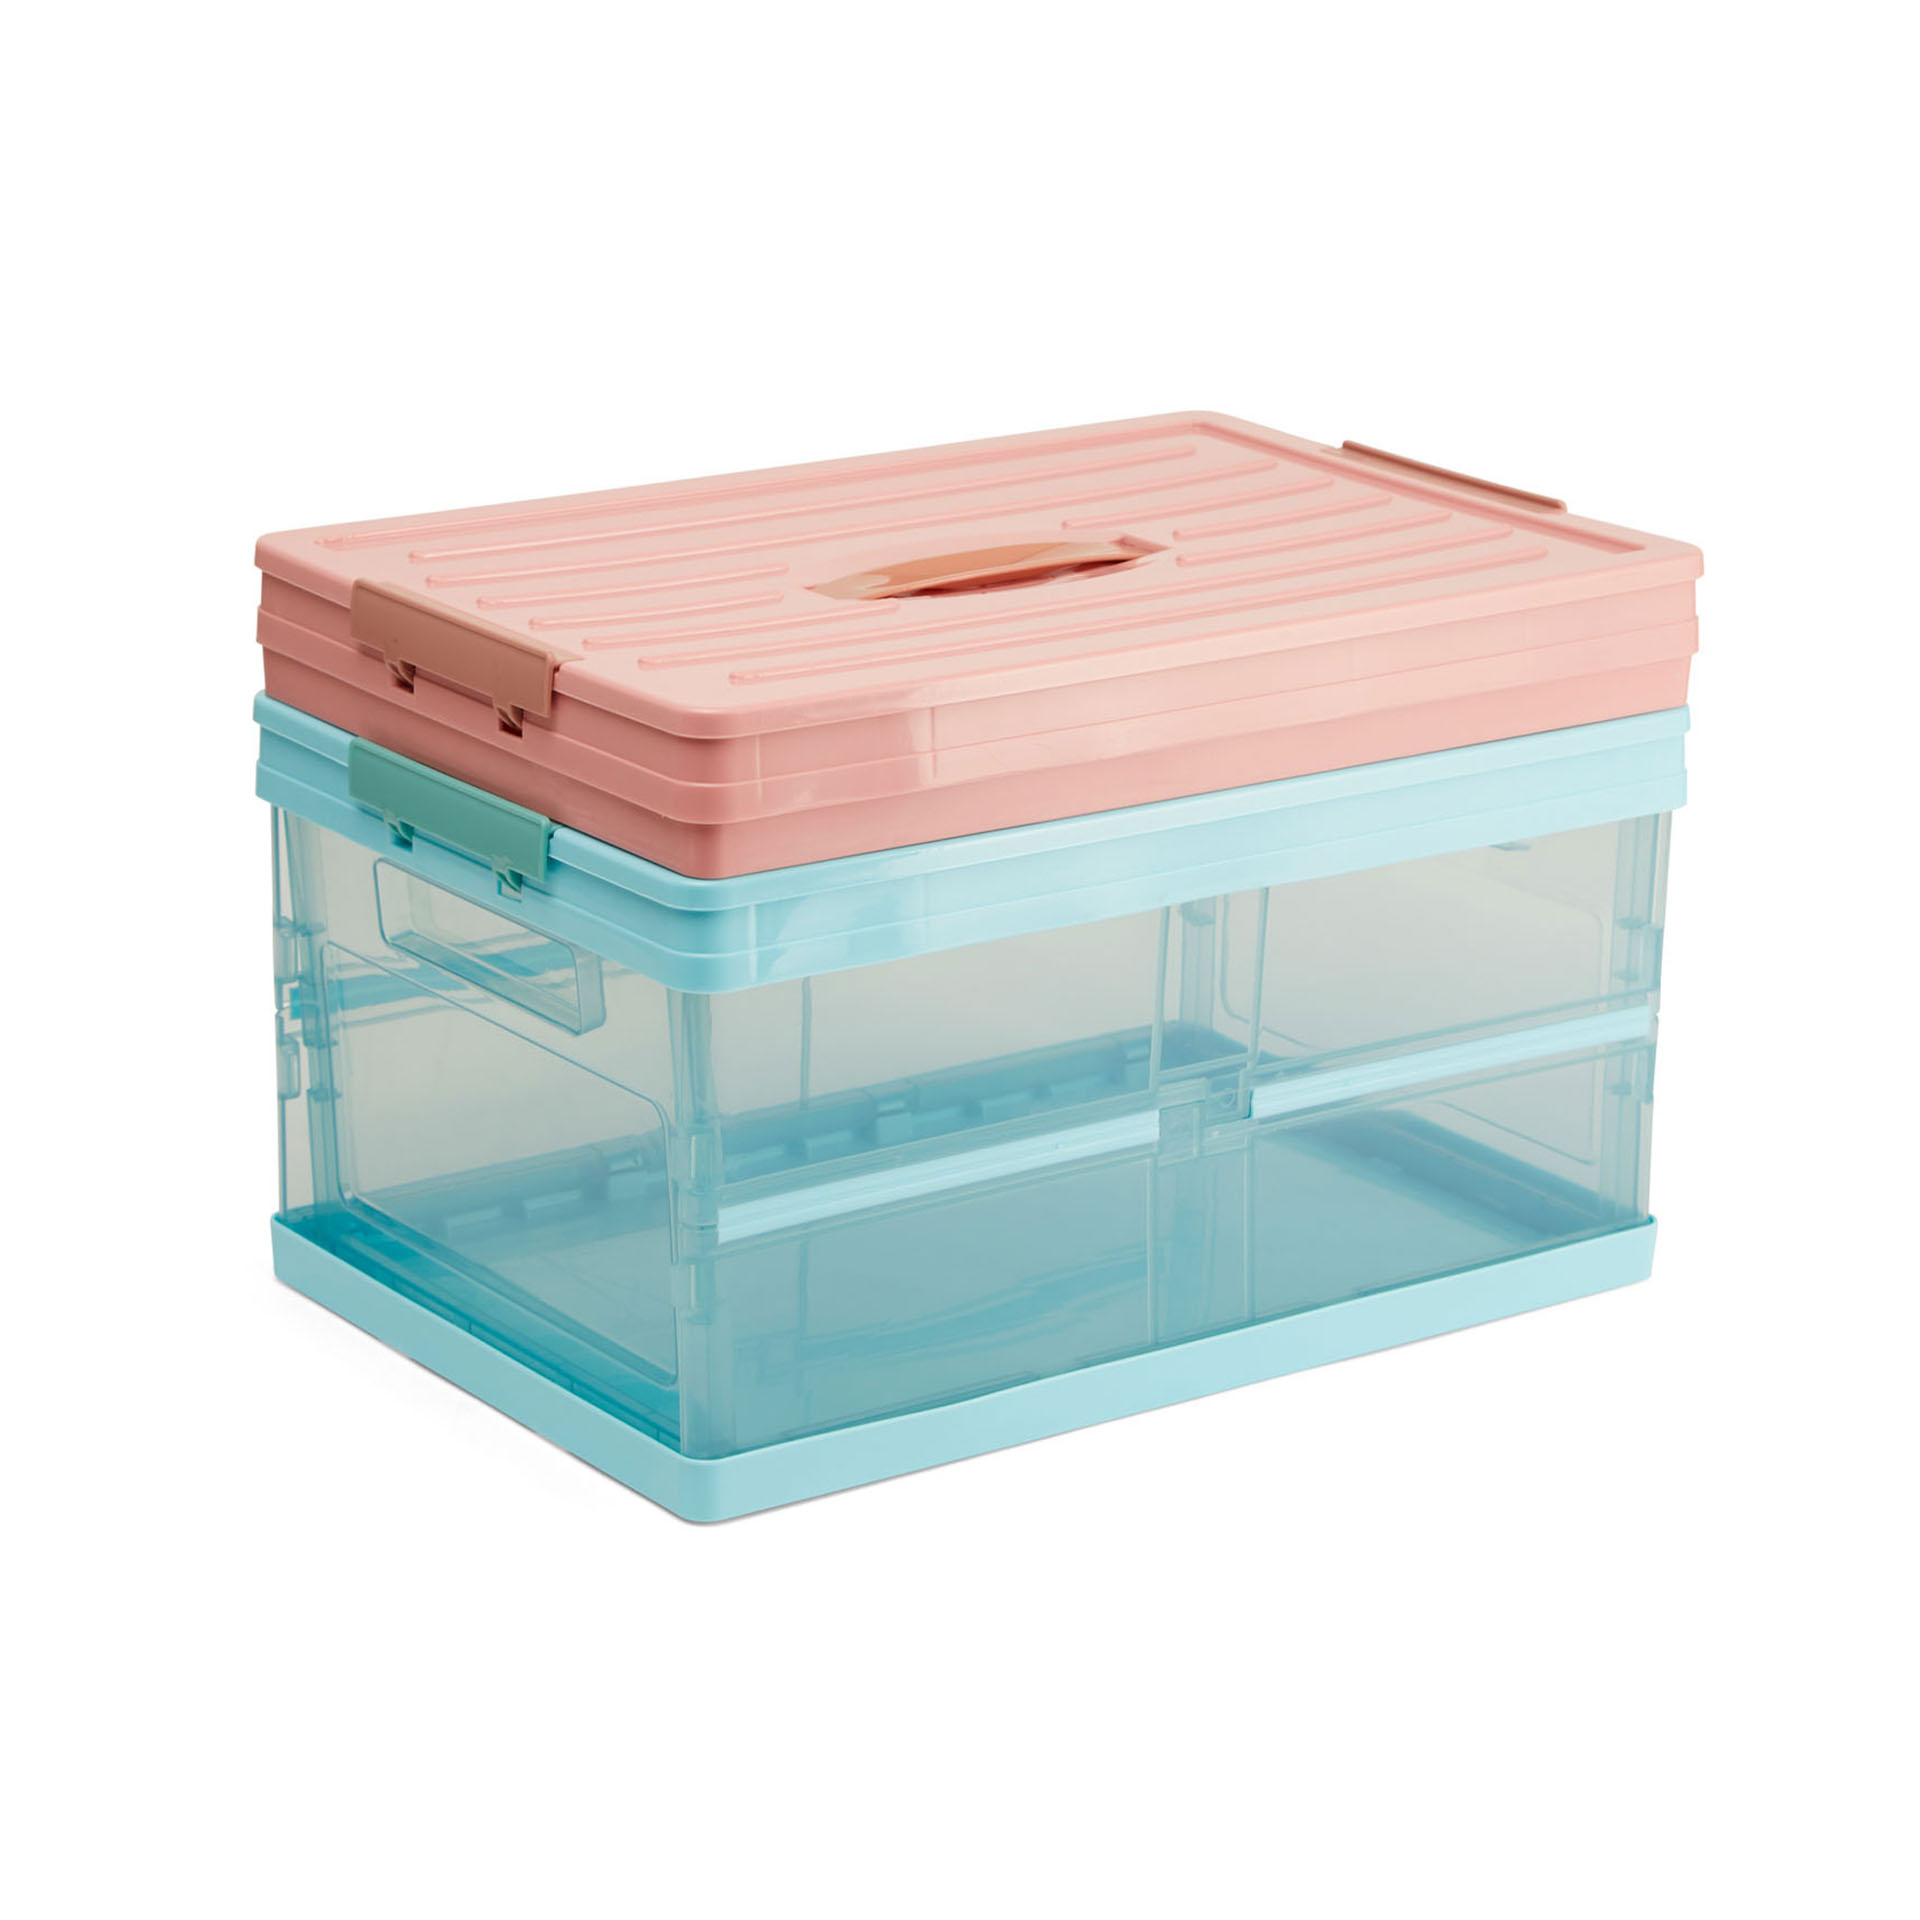 Scatola contenitore in plastica, colore rosa, rosa, large